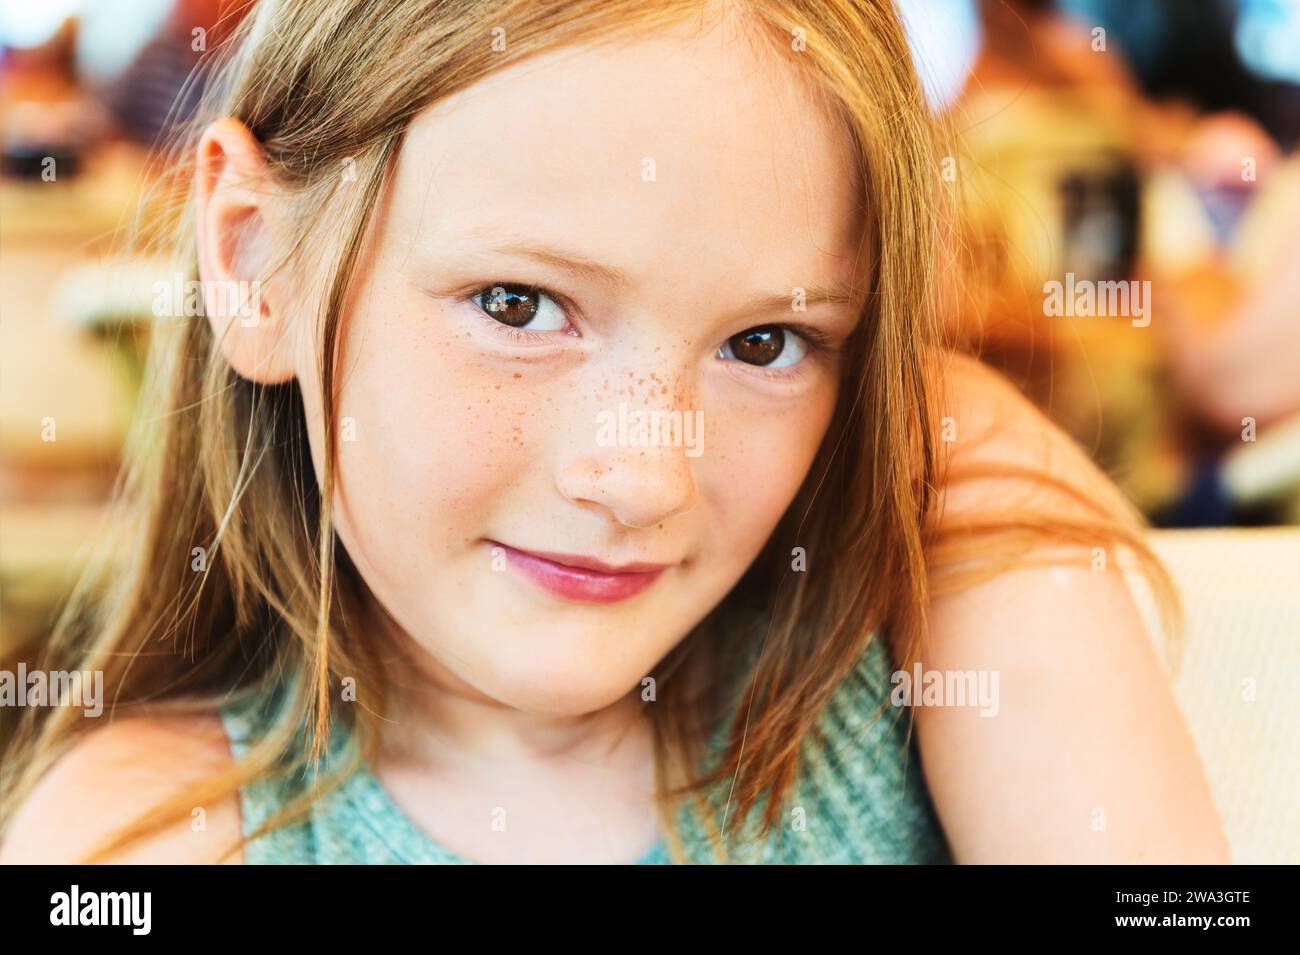 Nahaufnahme Porträt eines süßen kleinen Mädchens von 7-8 Jahren Stockfoto